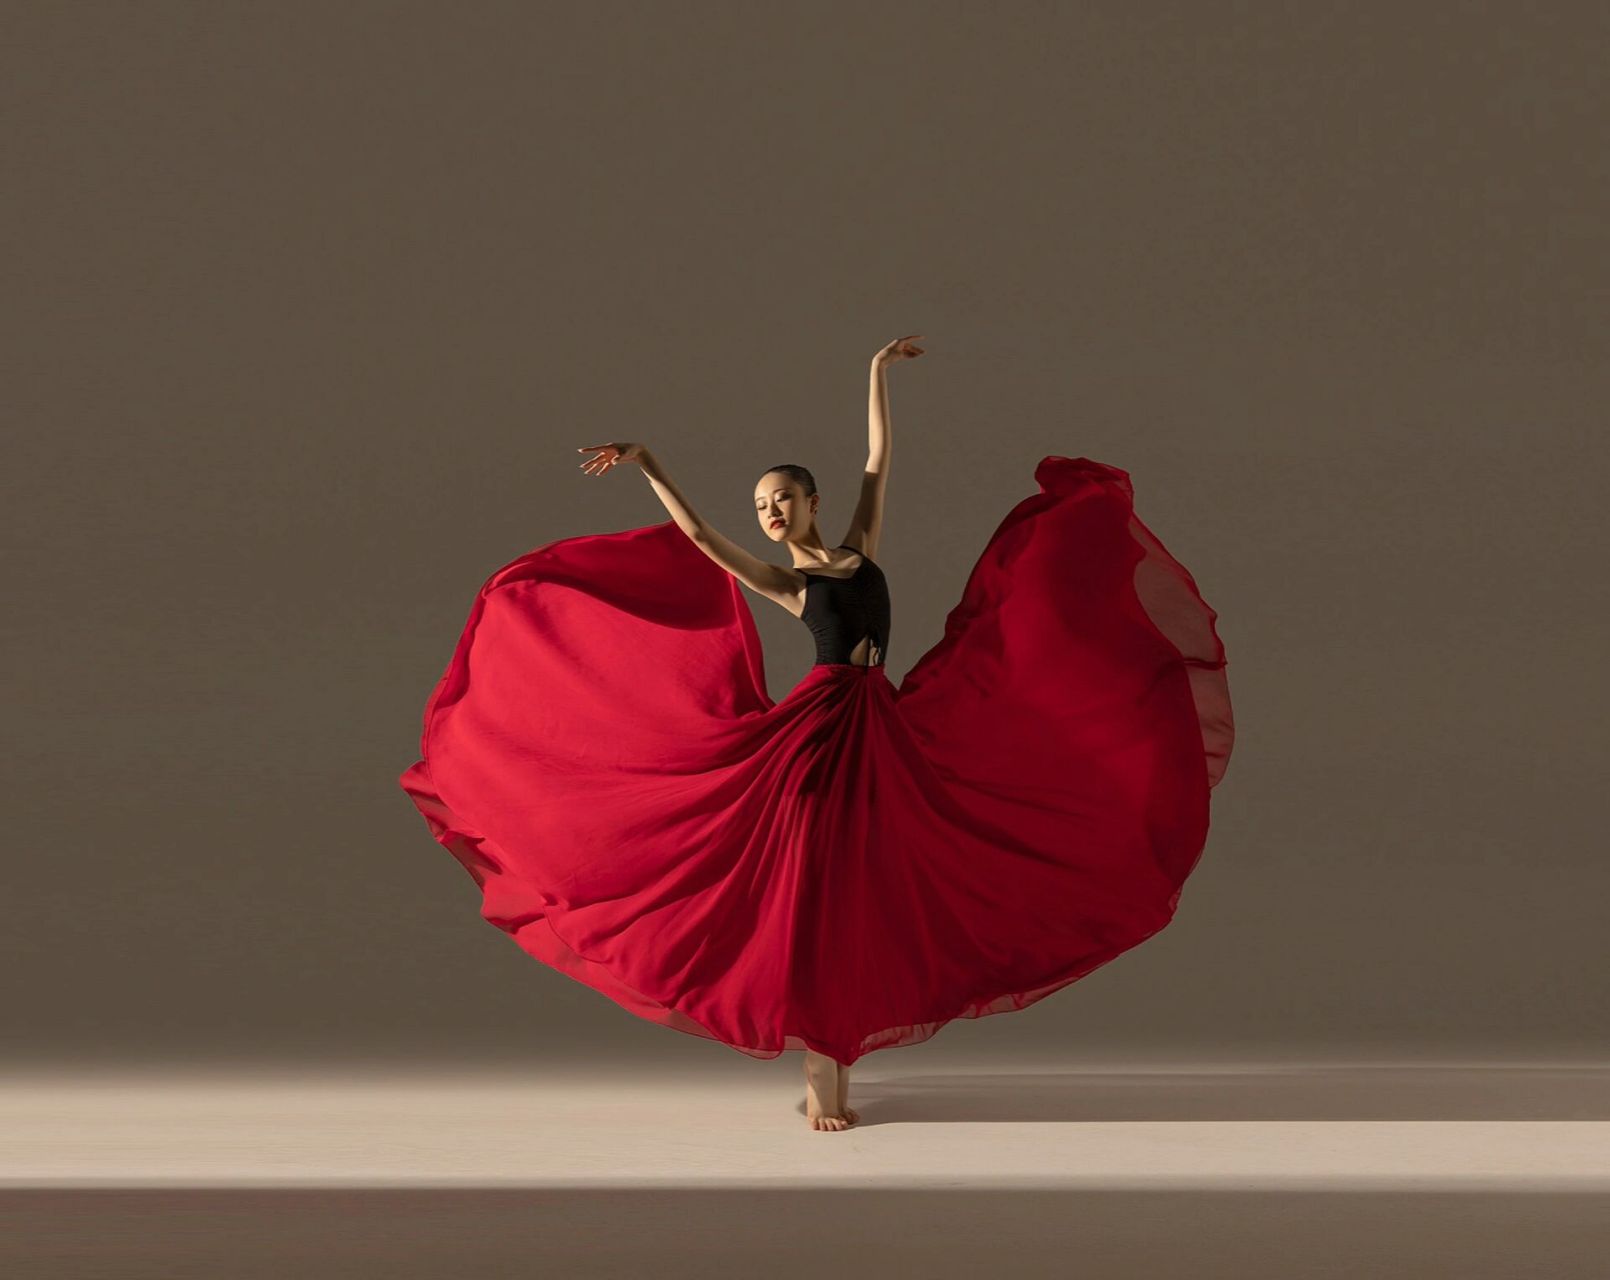 拉丁舞姿分享 恰恰恰 转转转舞蹈摄影